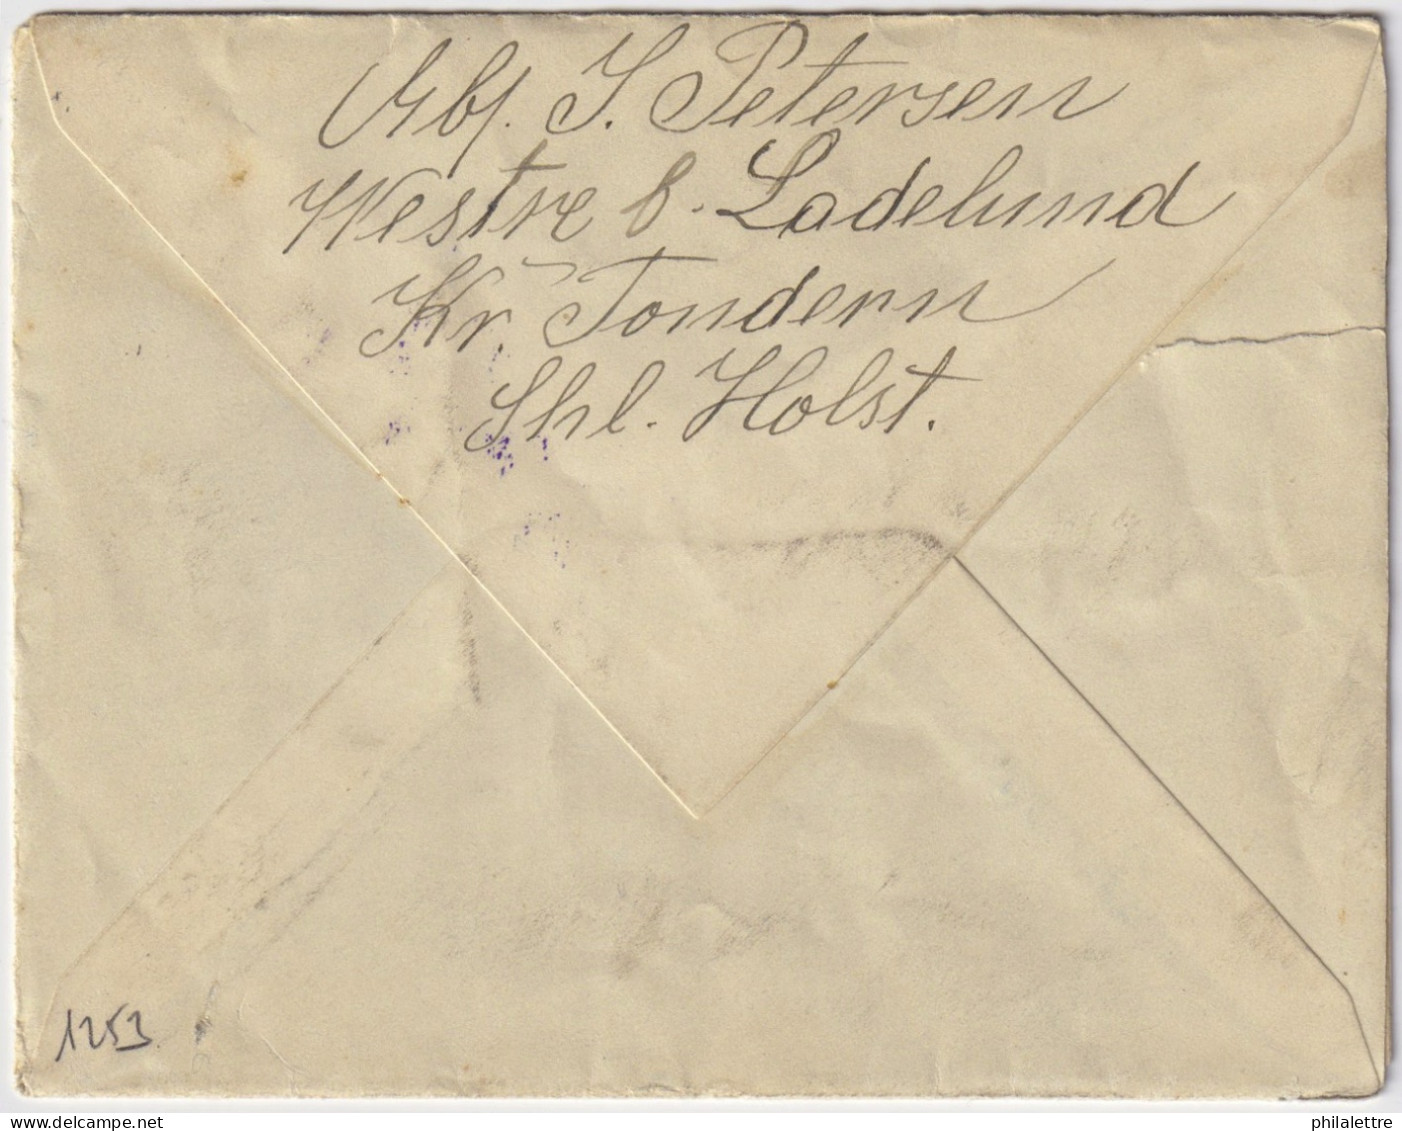 ALLEMAGNE / GERMANY - 1917 Feldpost Letter From LECK To A Soldier - Returned To Sender "ZURÜCK, GEFALLEN" (deceased) - Storia Postale